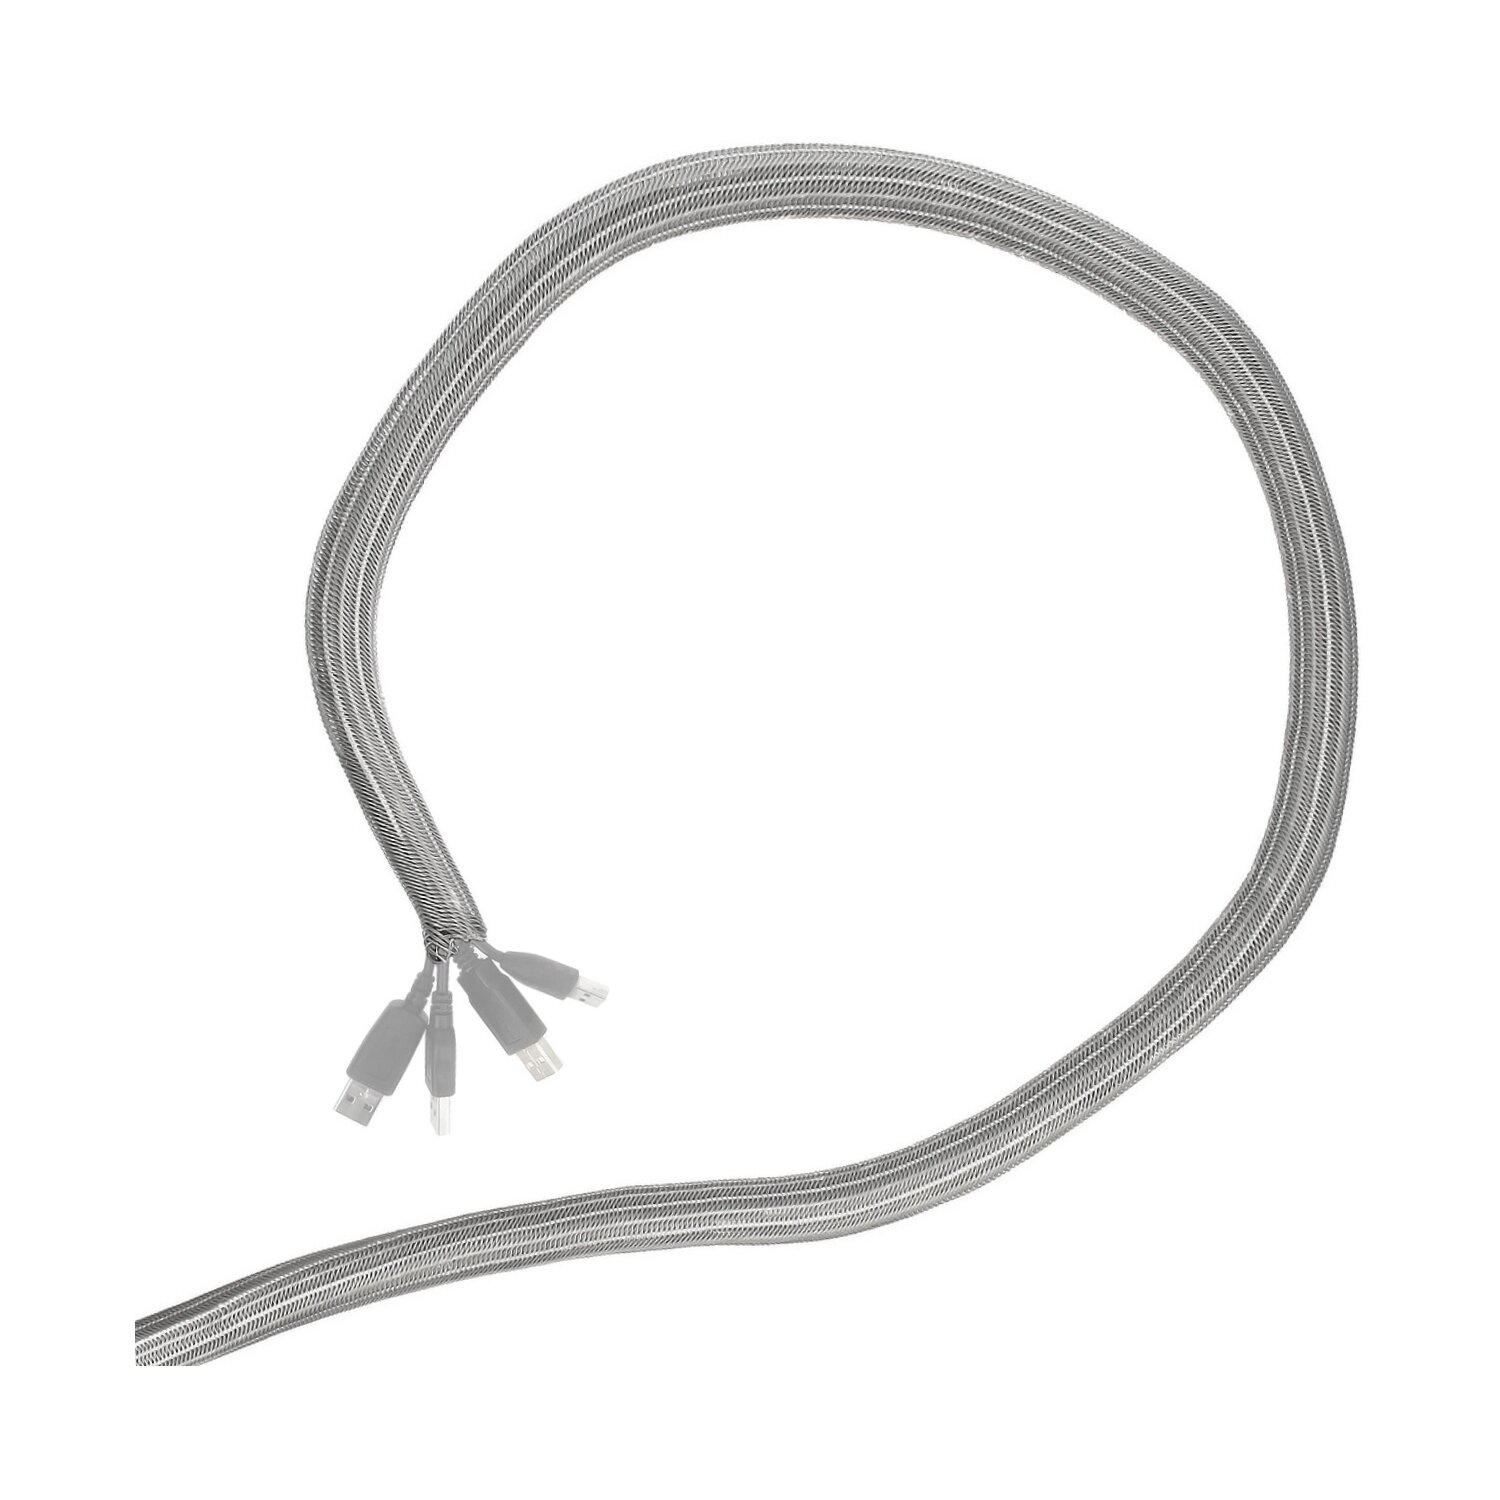 Minadax® 2 Meter, 13mm Ø Selbstschließender Profi Kabelschlauch Kabelkanal in grau für flexibles Kabelmanagement